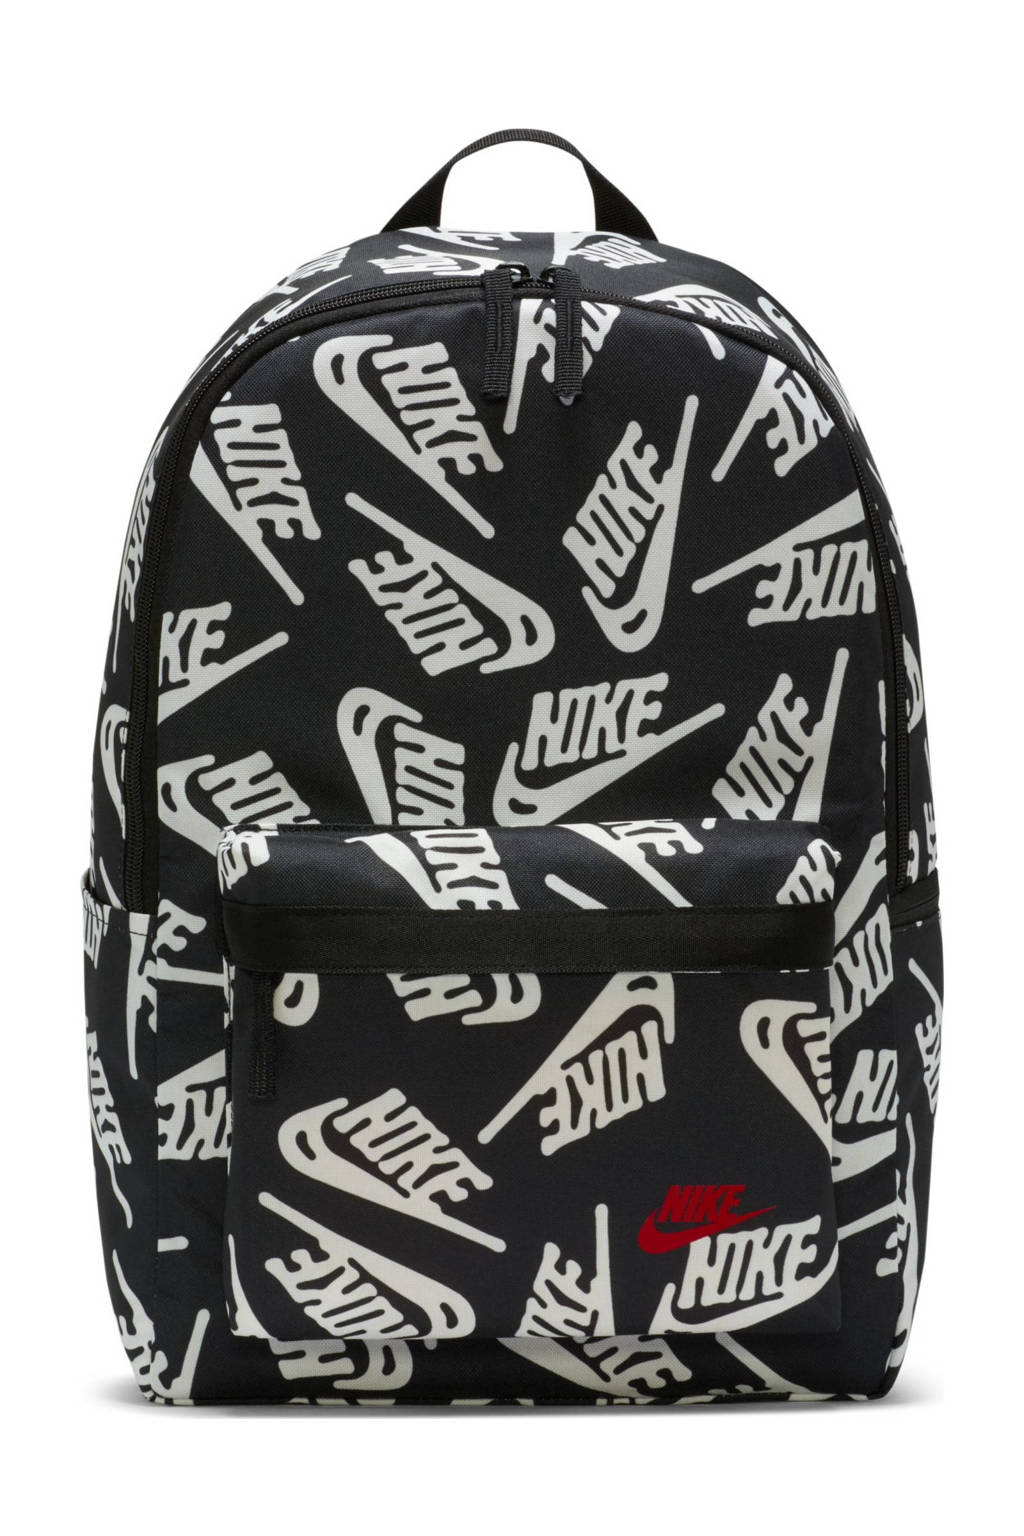 Nike  rugzak Heritage 3.0 zwart/wit, Zwart/wit aop